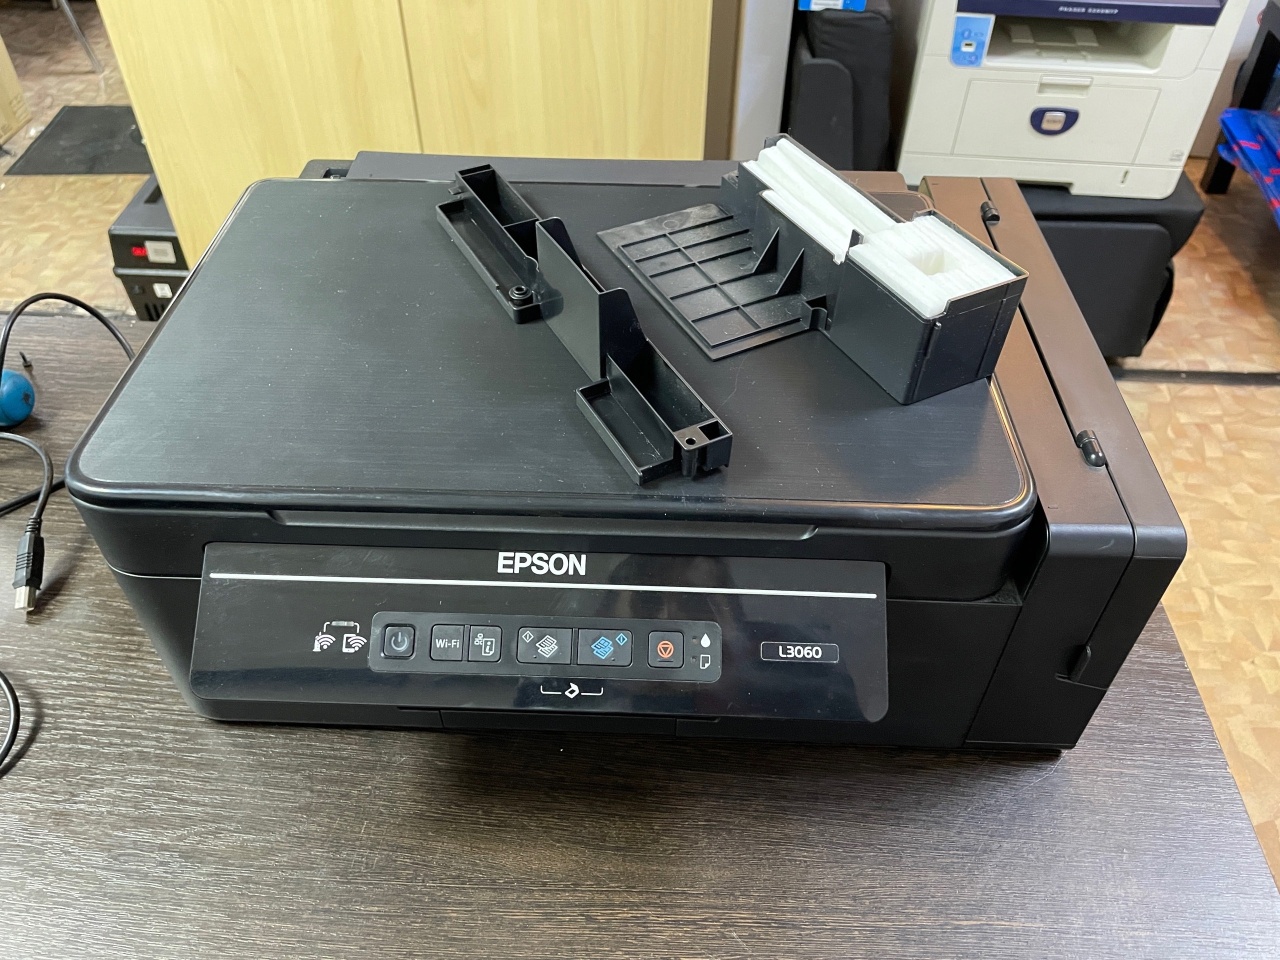 Ремонт принтера Epson l3060